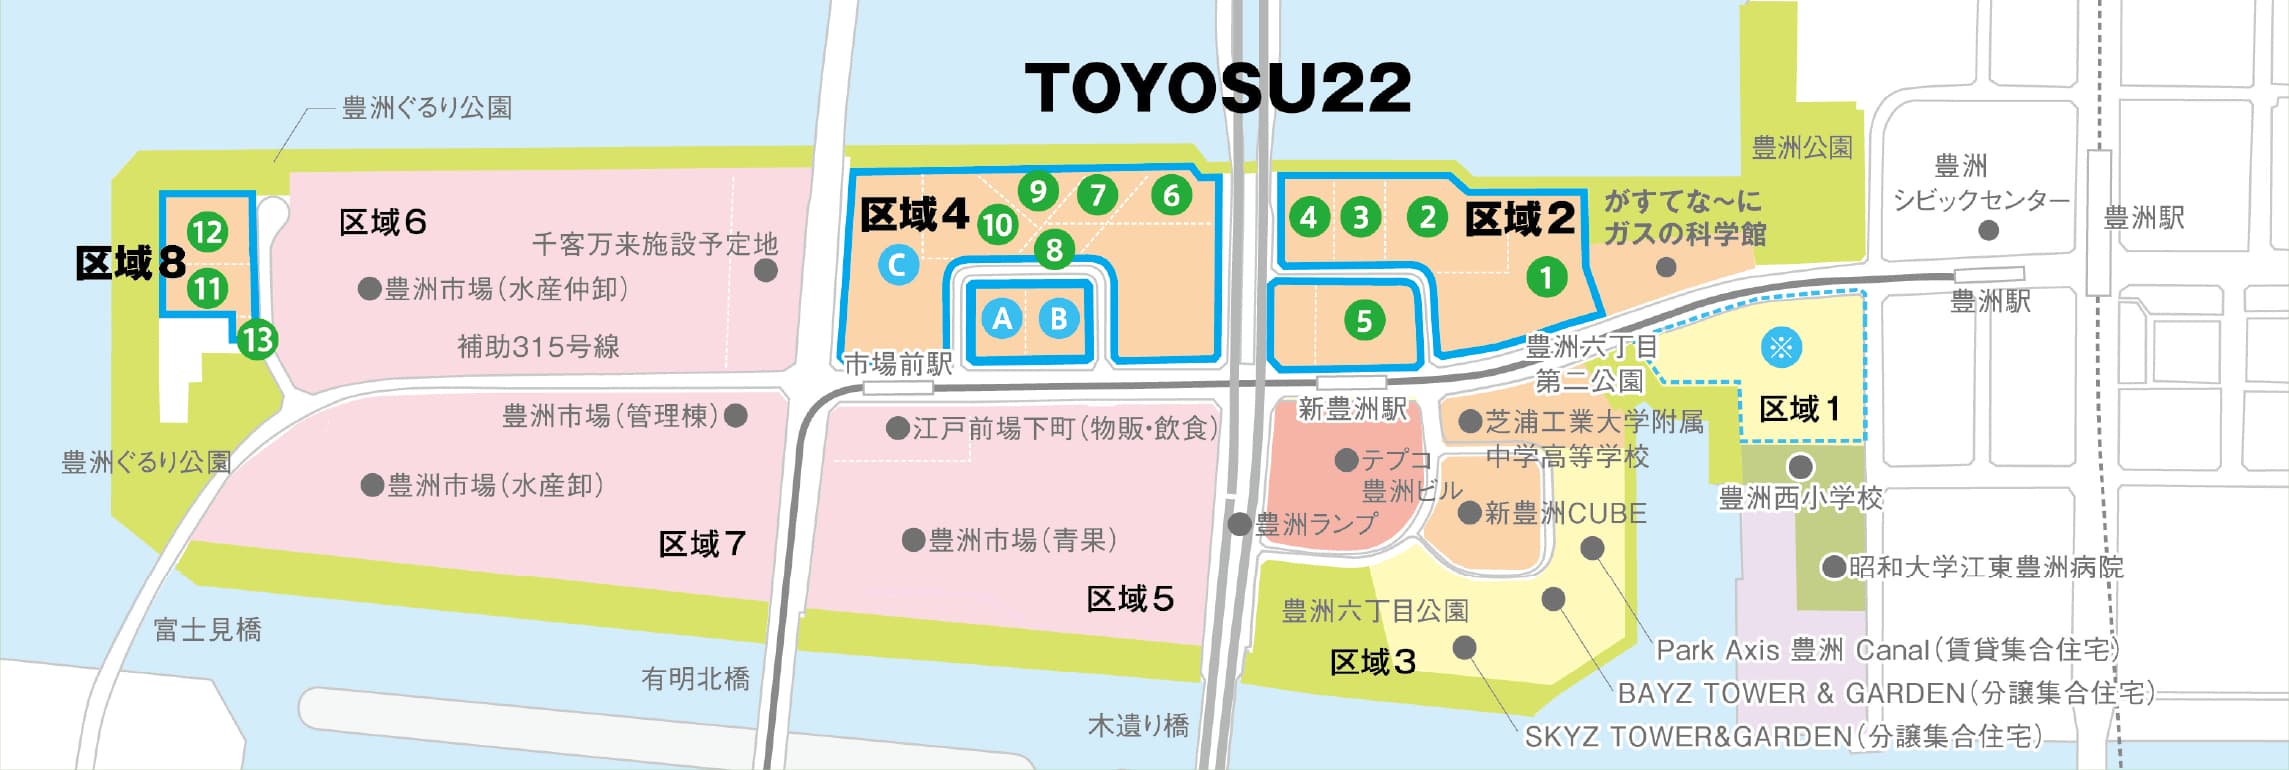 TOYOSU22マップ